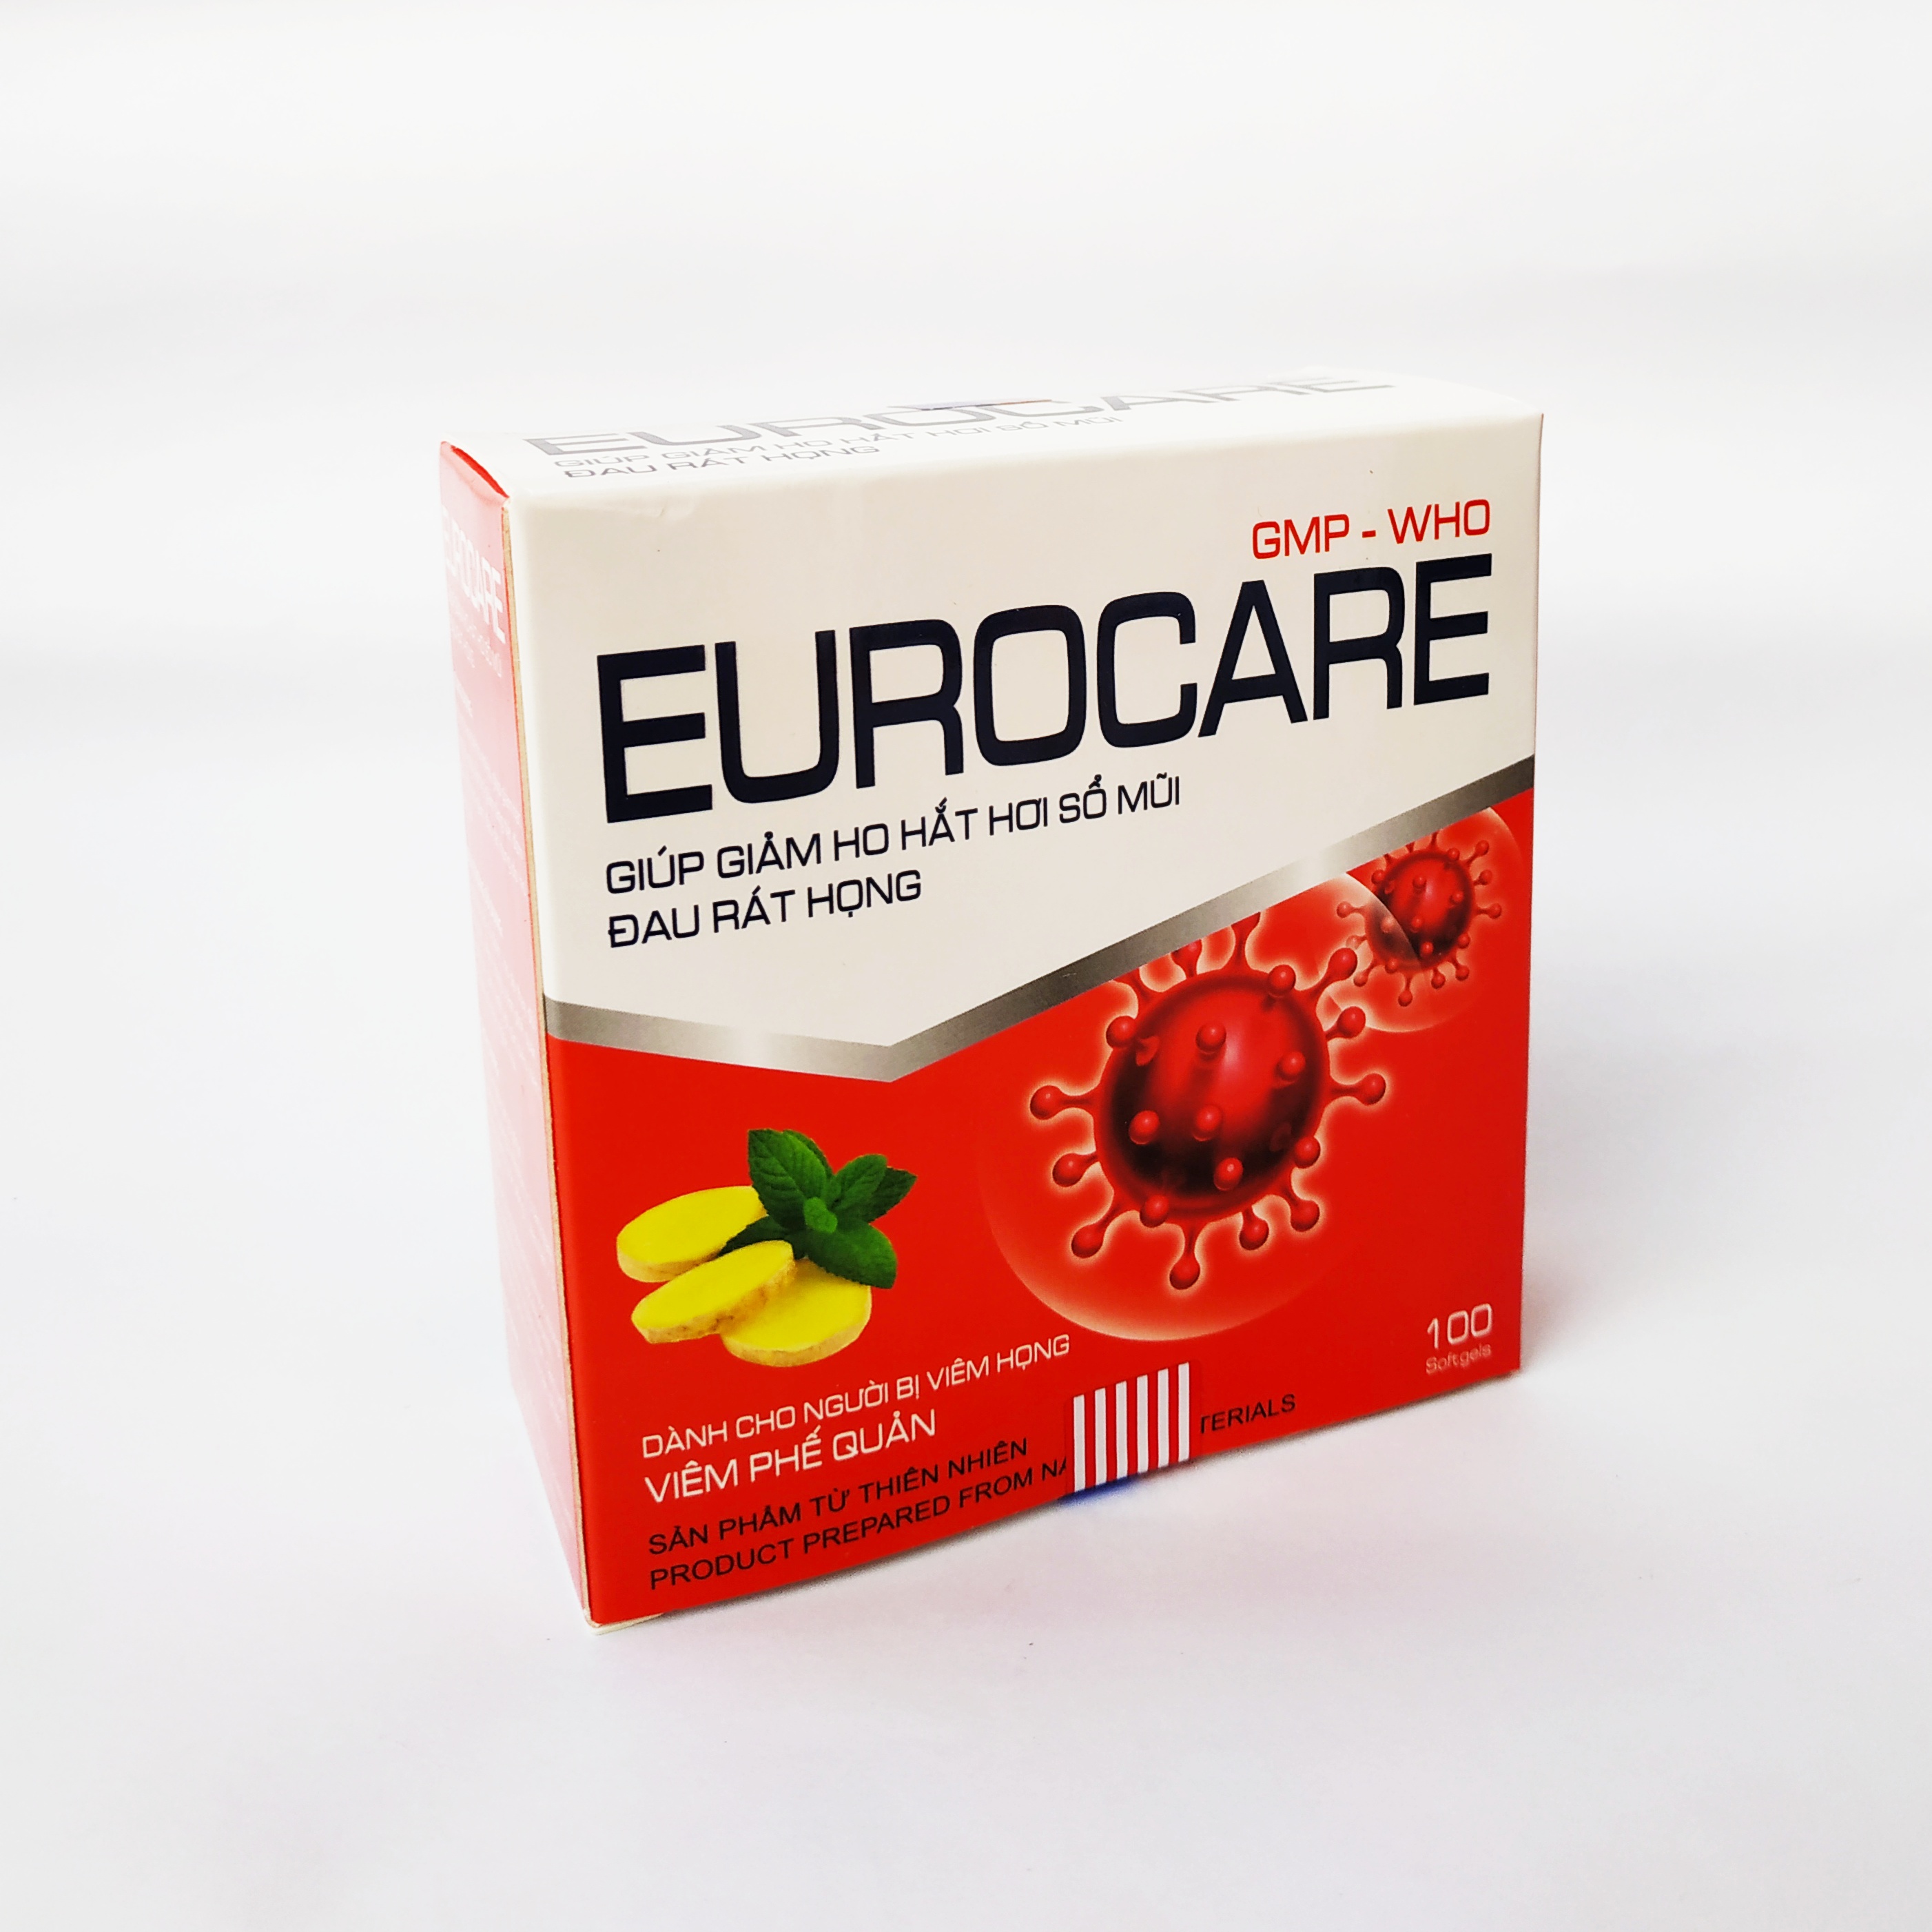 Eurocare – Giúp Giảm Ho Thông Thoáng Mũi Họng, Giảm Các Triệu Chứng Cảm Lạnh, Sổ Mũi, Đau Rát Họng – Eugica Hộp 100 Viên